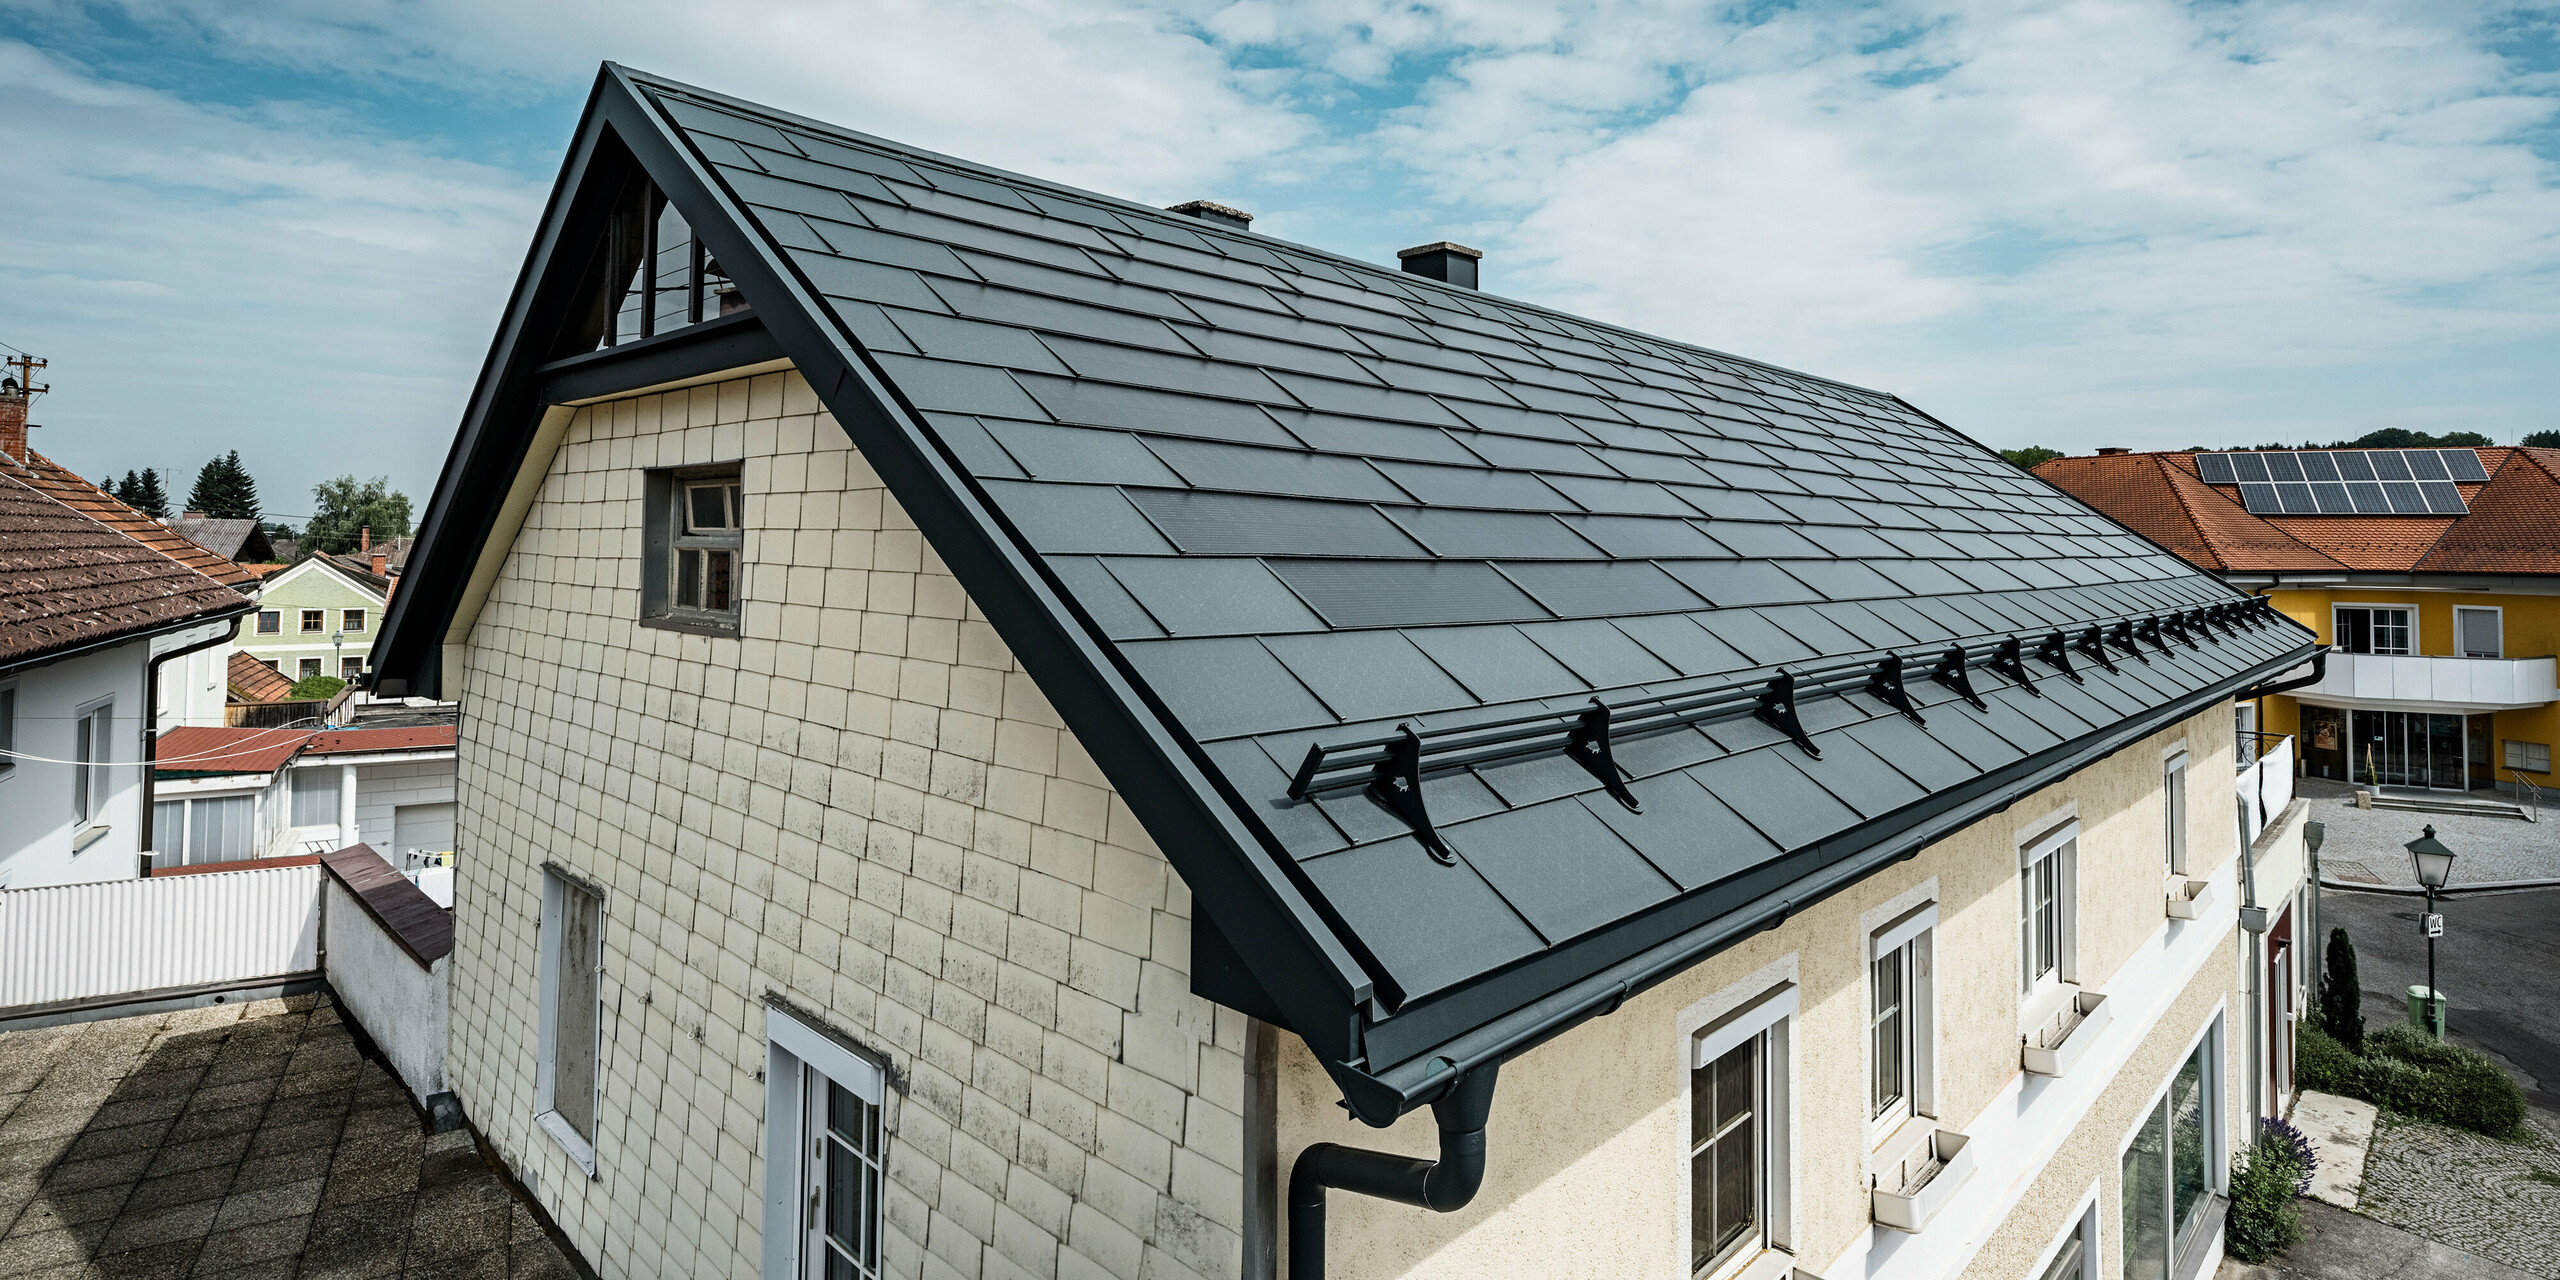 Vue plongeante sur le toit d'une maison familiale à Mettmach, en Autriche. Dans le cadre d'une rénovation, la maison a été équipée de tuiles solaires PREFA en anthracite. La surface structurée des tuiles s'harmonise avec l'élégance simple de la maison. Un système de pare-neige est fixé au bord du toit. D'autres maisons dotées de solutions de toit traditionnelles et solaires sont visibles à l'arrière-plan, mettant en valeur la conception moderne et économe en énergie du toit dans un cadre rural.